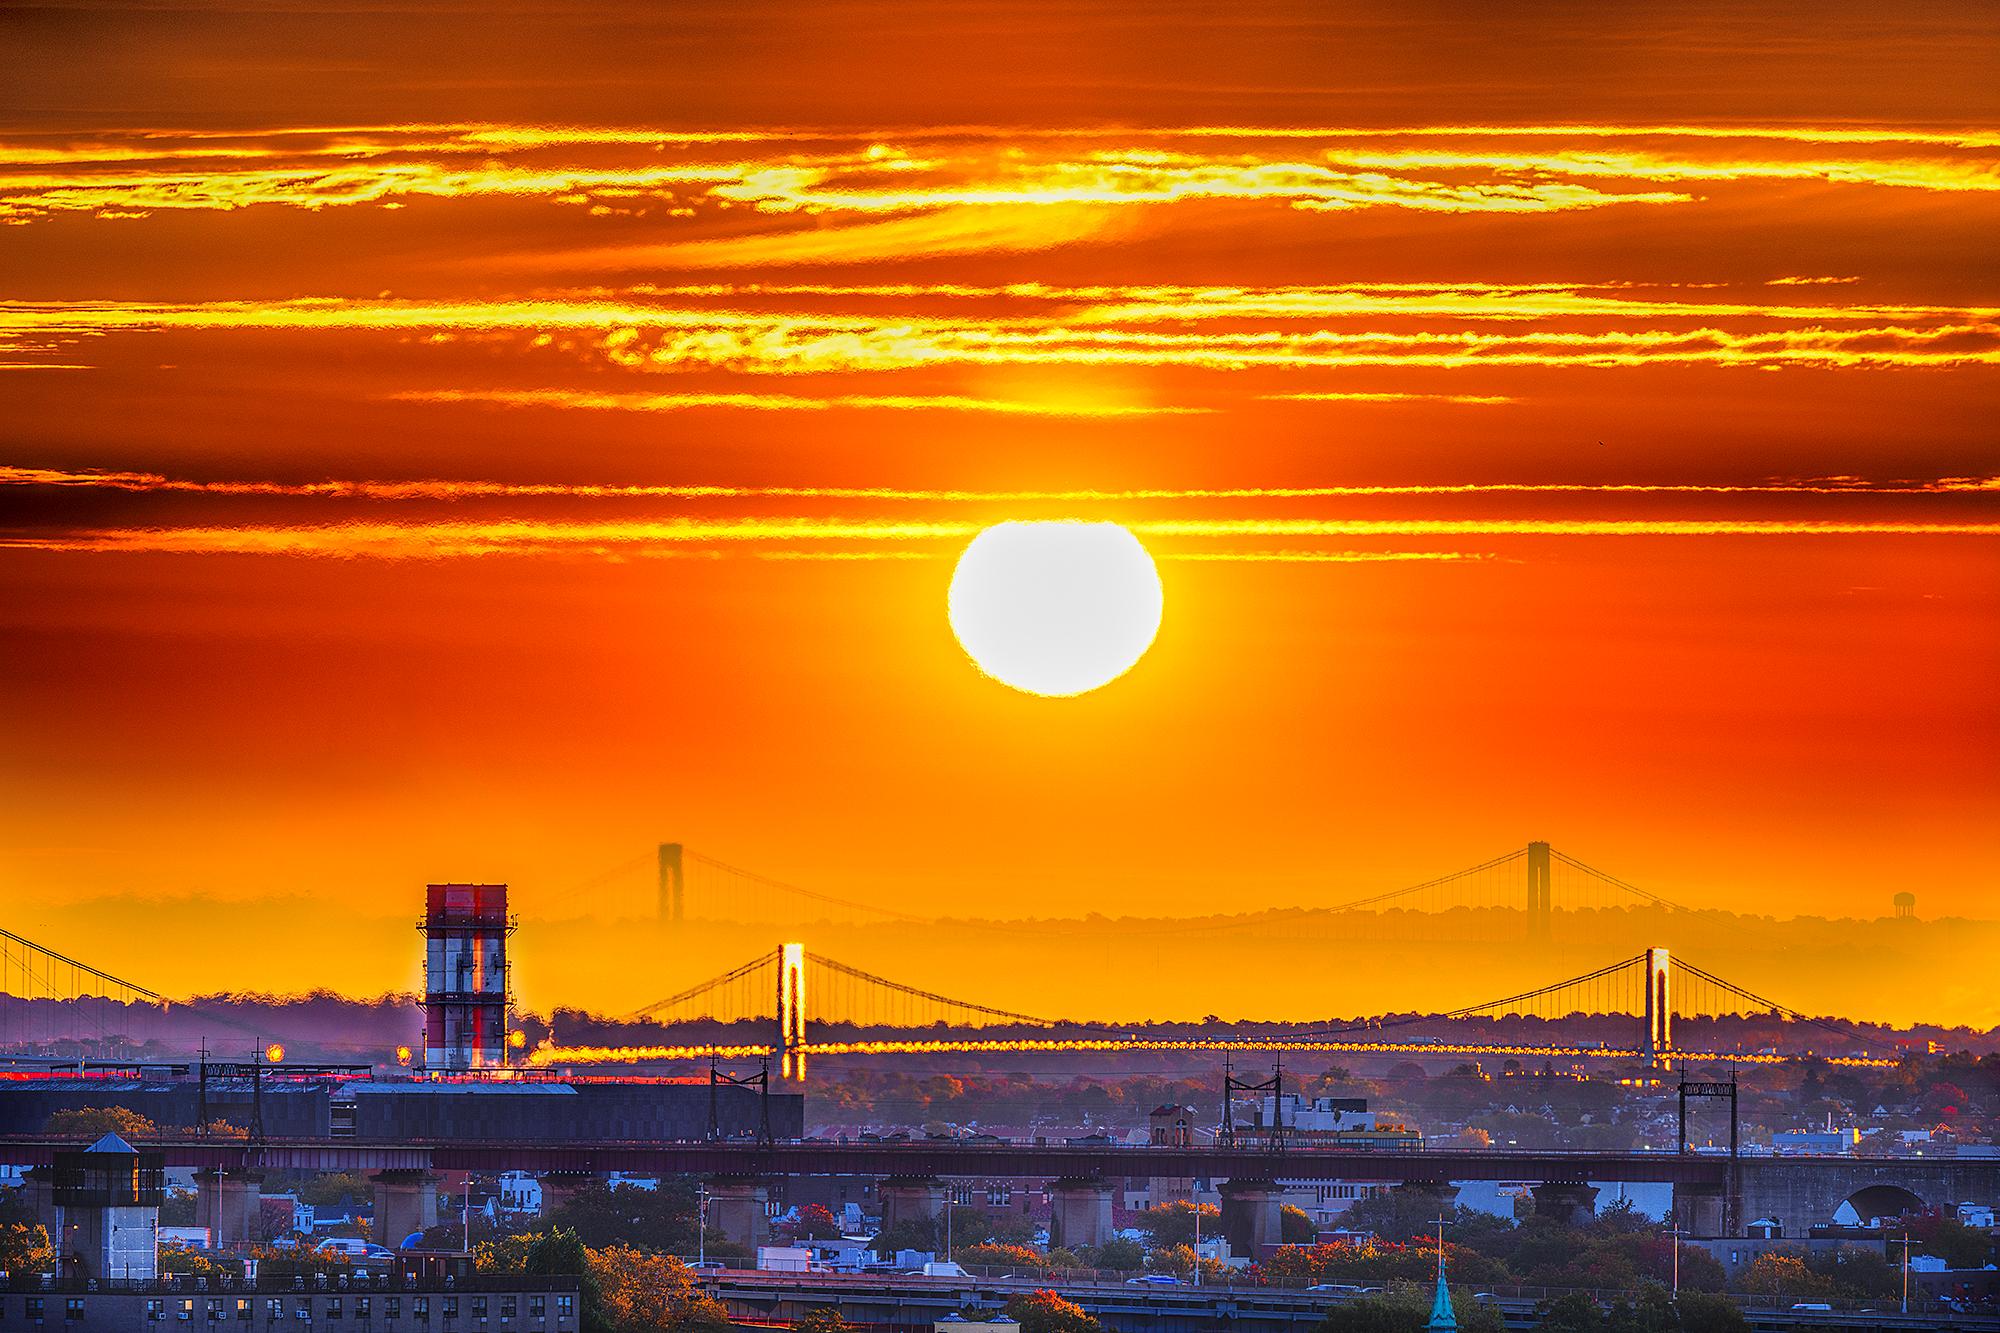 Die Brücken von New York City bei Sonnenuntergang in lebhaftem Orange